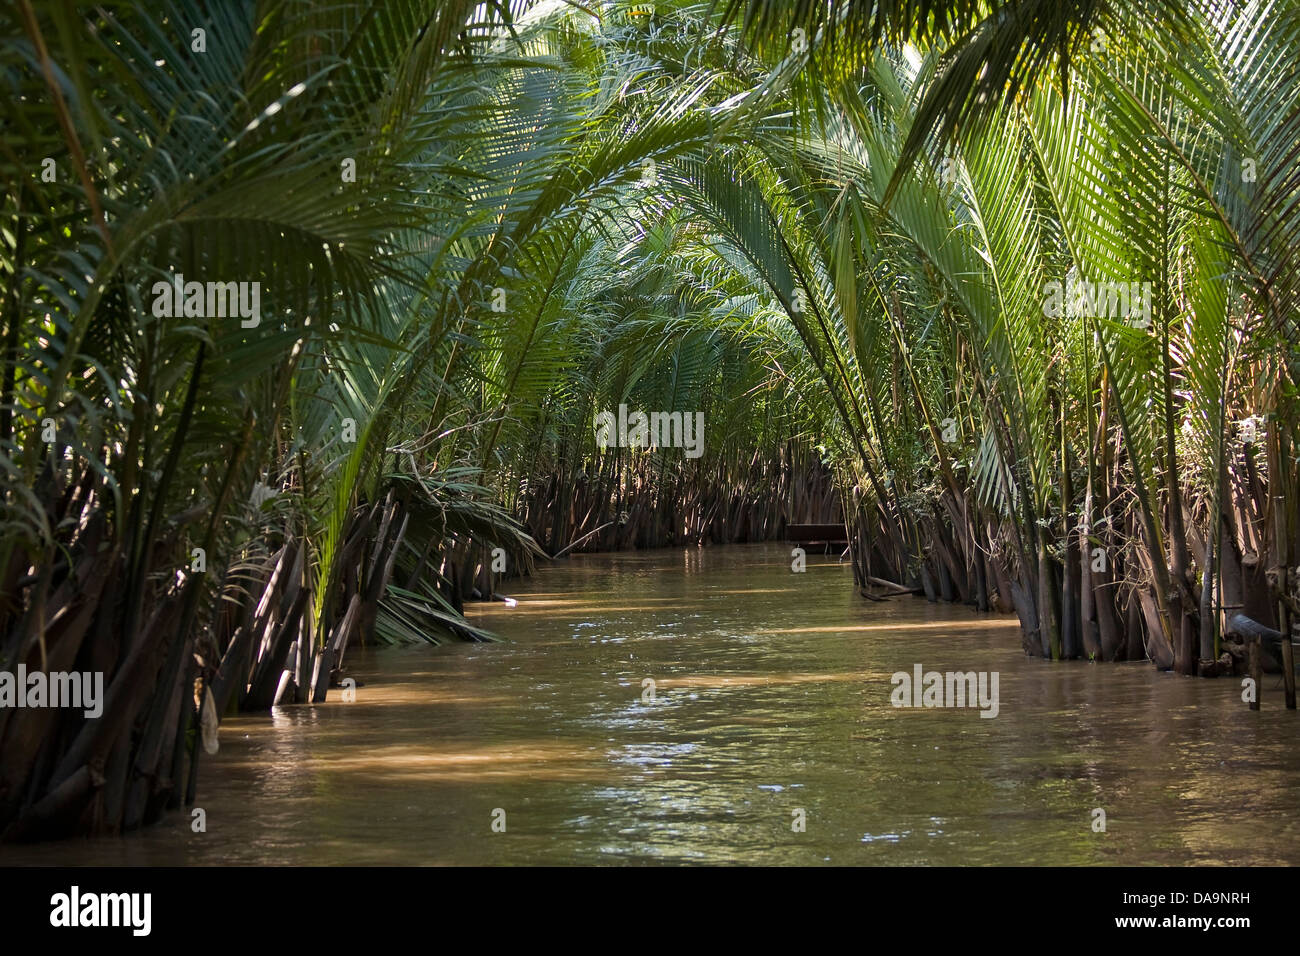 Asia, possono, sul fiume Mekong Delta, sud-est asiatico, Tho, Can Tho, canal, Vietnam, acqua Foto Stock